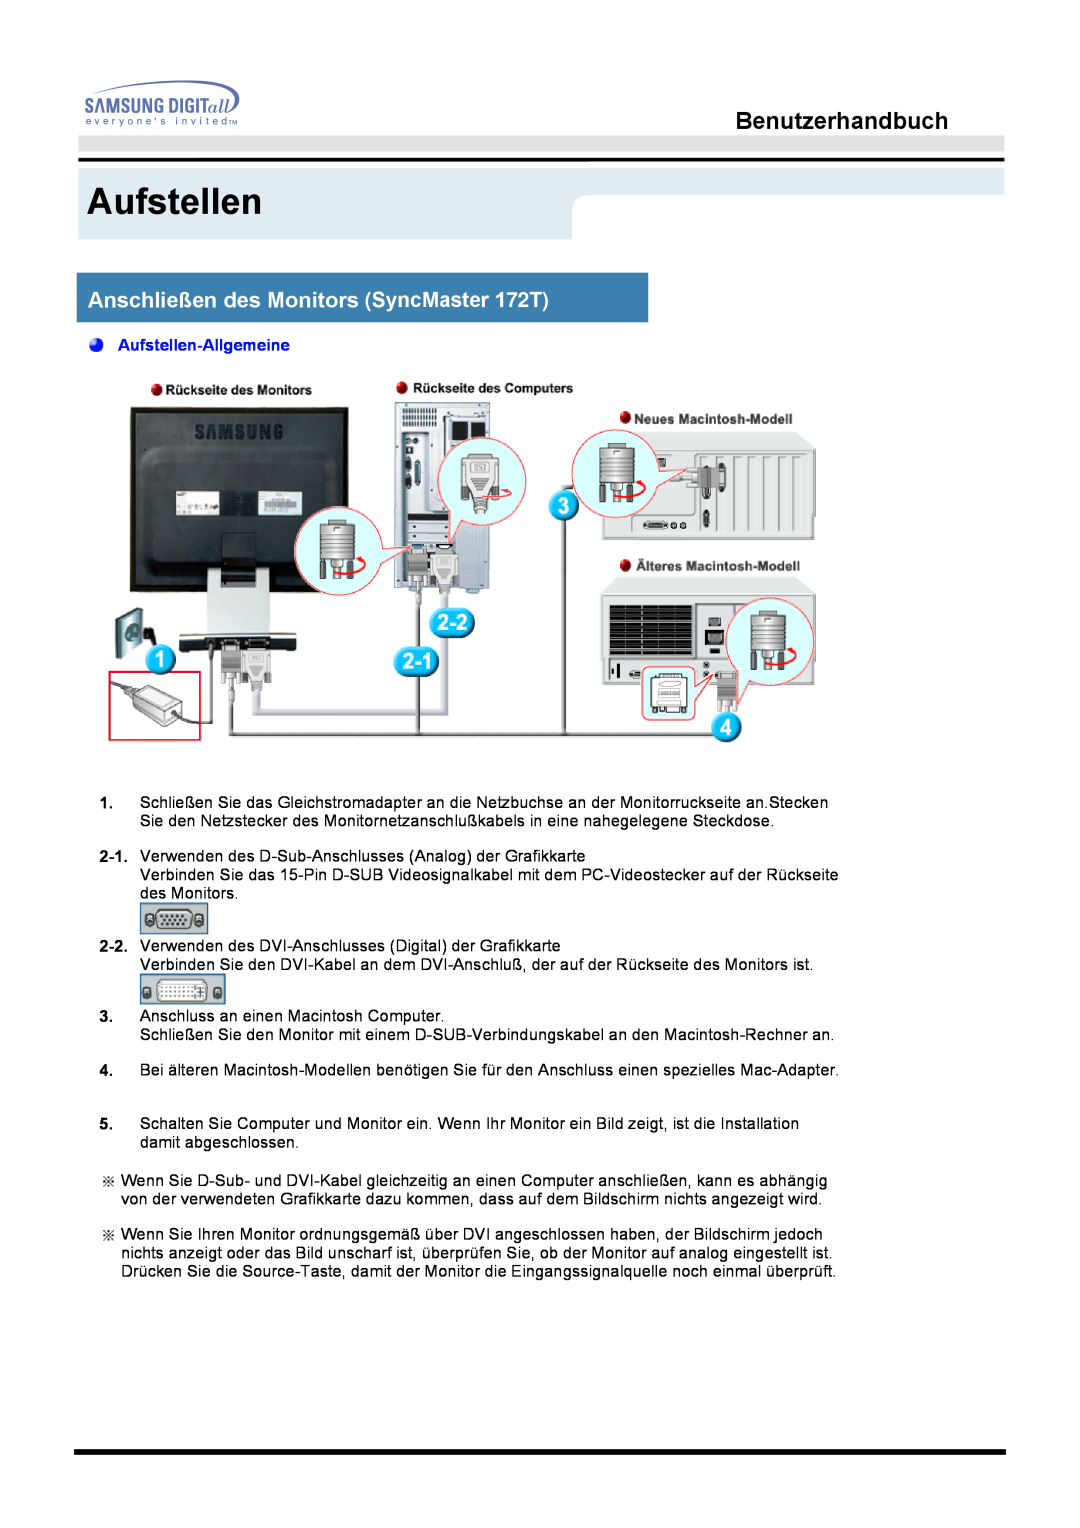 Samsung MO17ESZSZ/EDC, MO17PSZS/EDC Anschließen des Monitors SyncMaster 172T, Benutzerhandbuch, Aufstellen-Allgemeine 